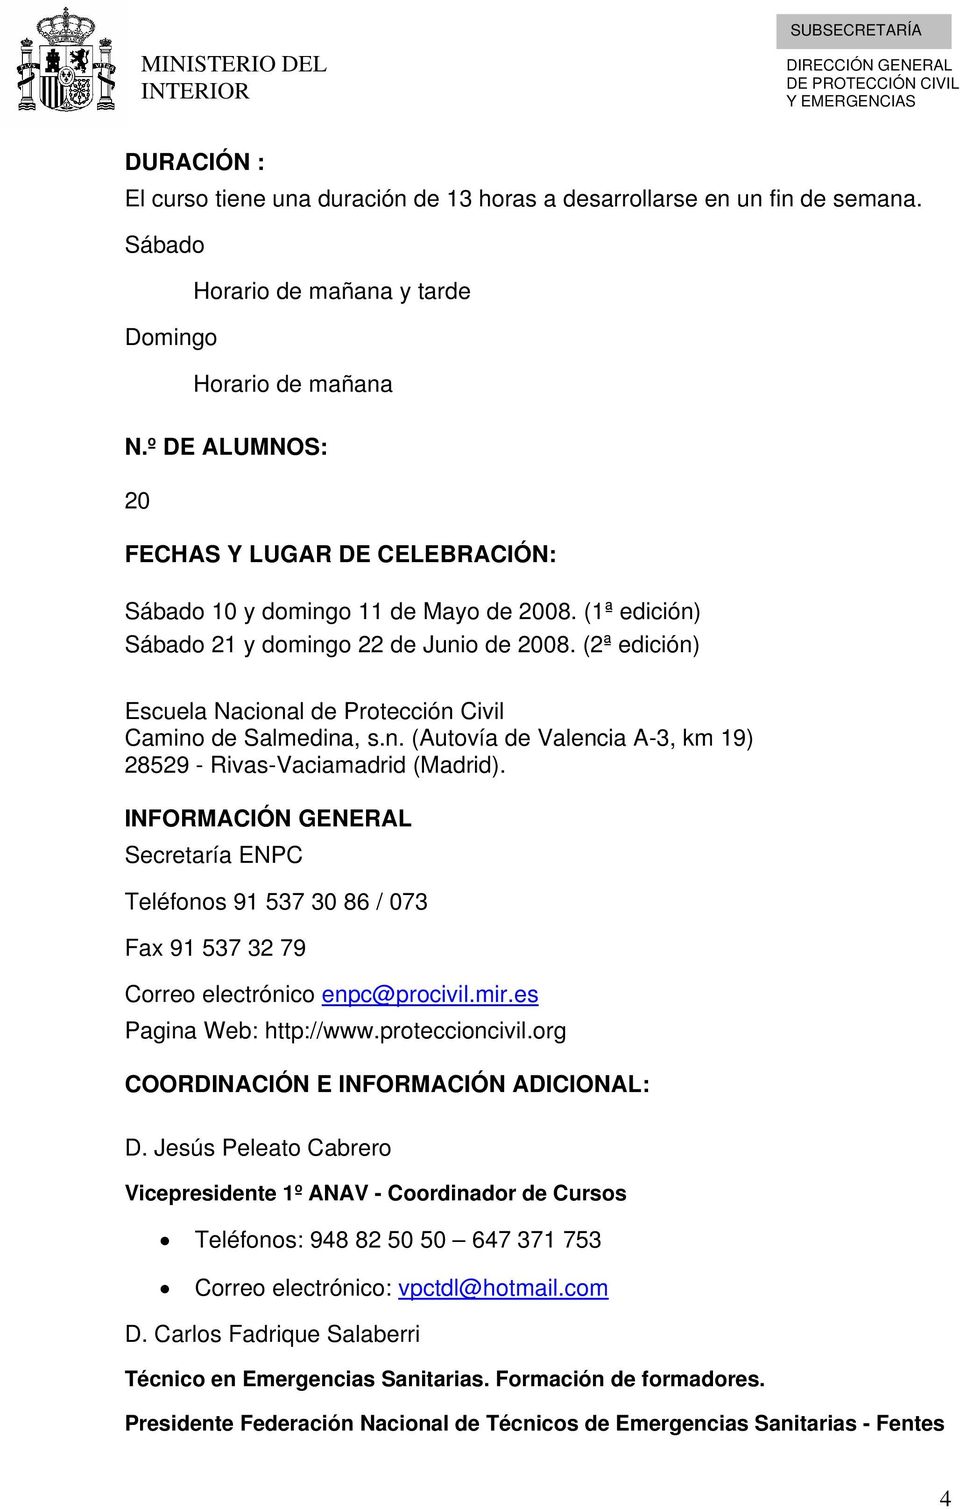 (2ª edición) Escuela Nacional de Protección Civil Camino de Salmedina, s.n. (Autovía de Valencia A-3, km 19) 28529 - Rivas-Vaciamadrid (Madrid).